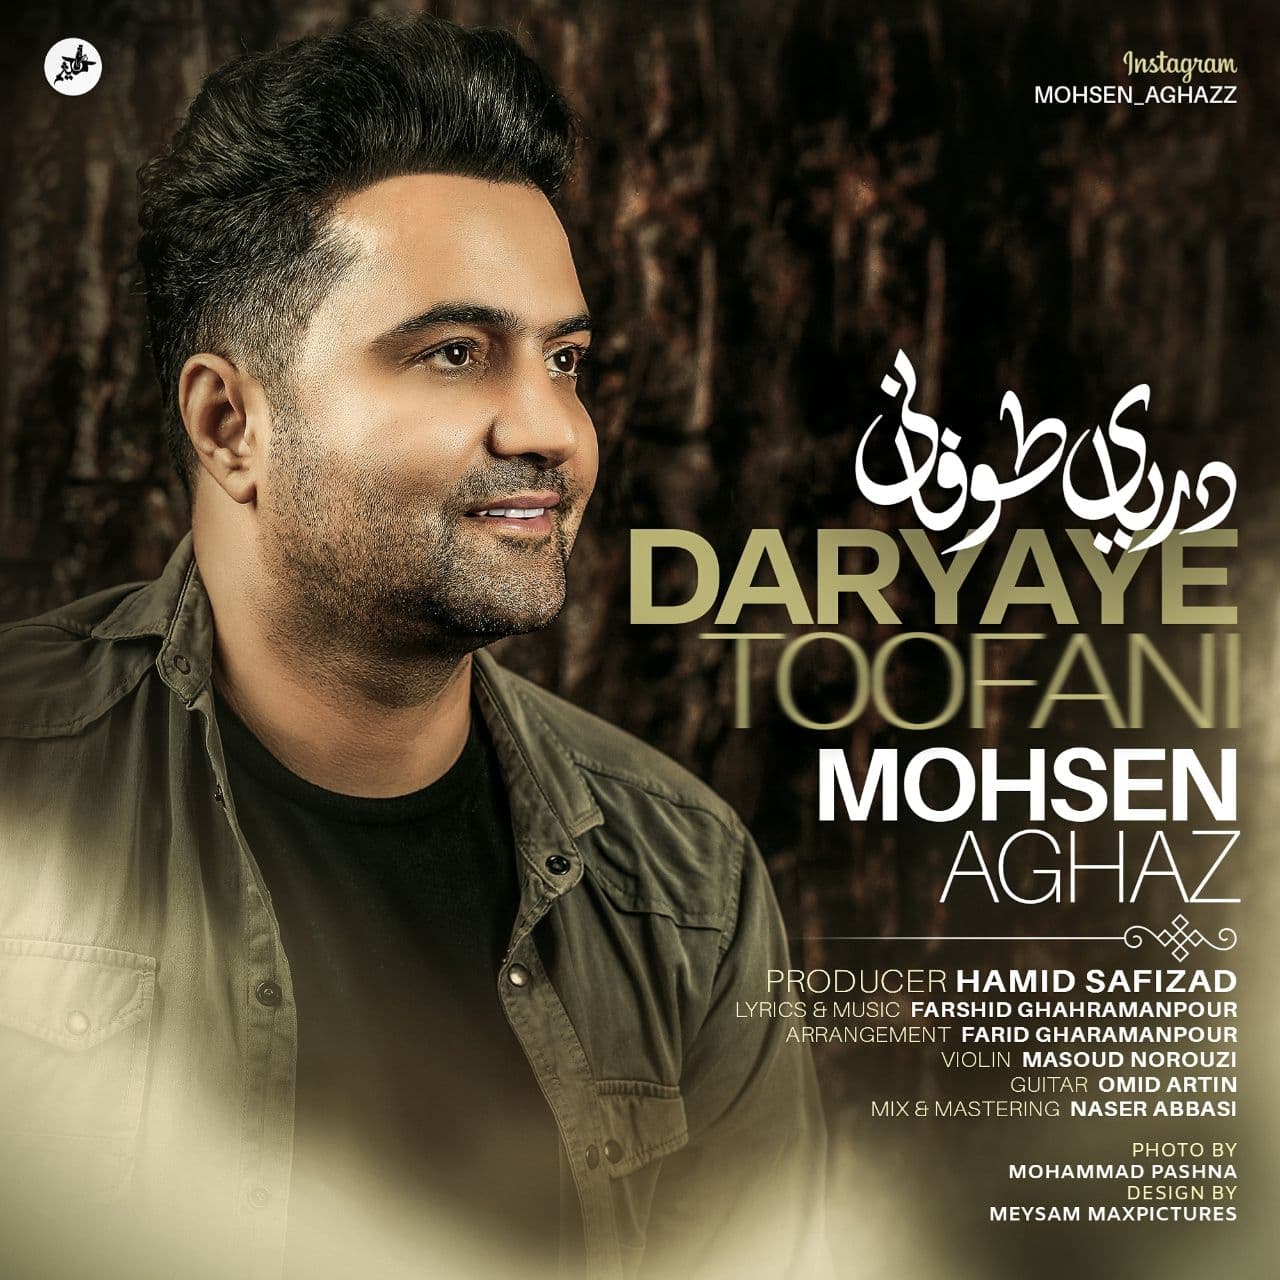 Mohsen Aghaz – Daryaye Toofani